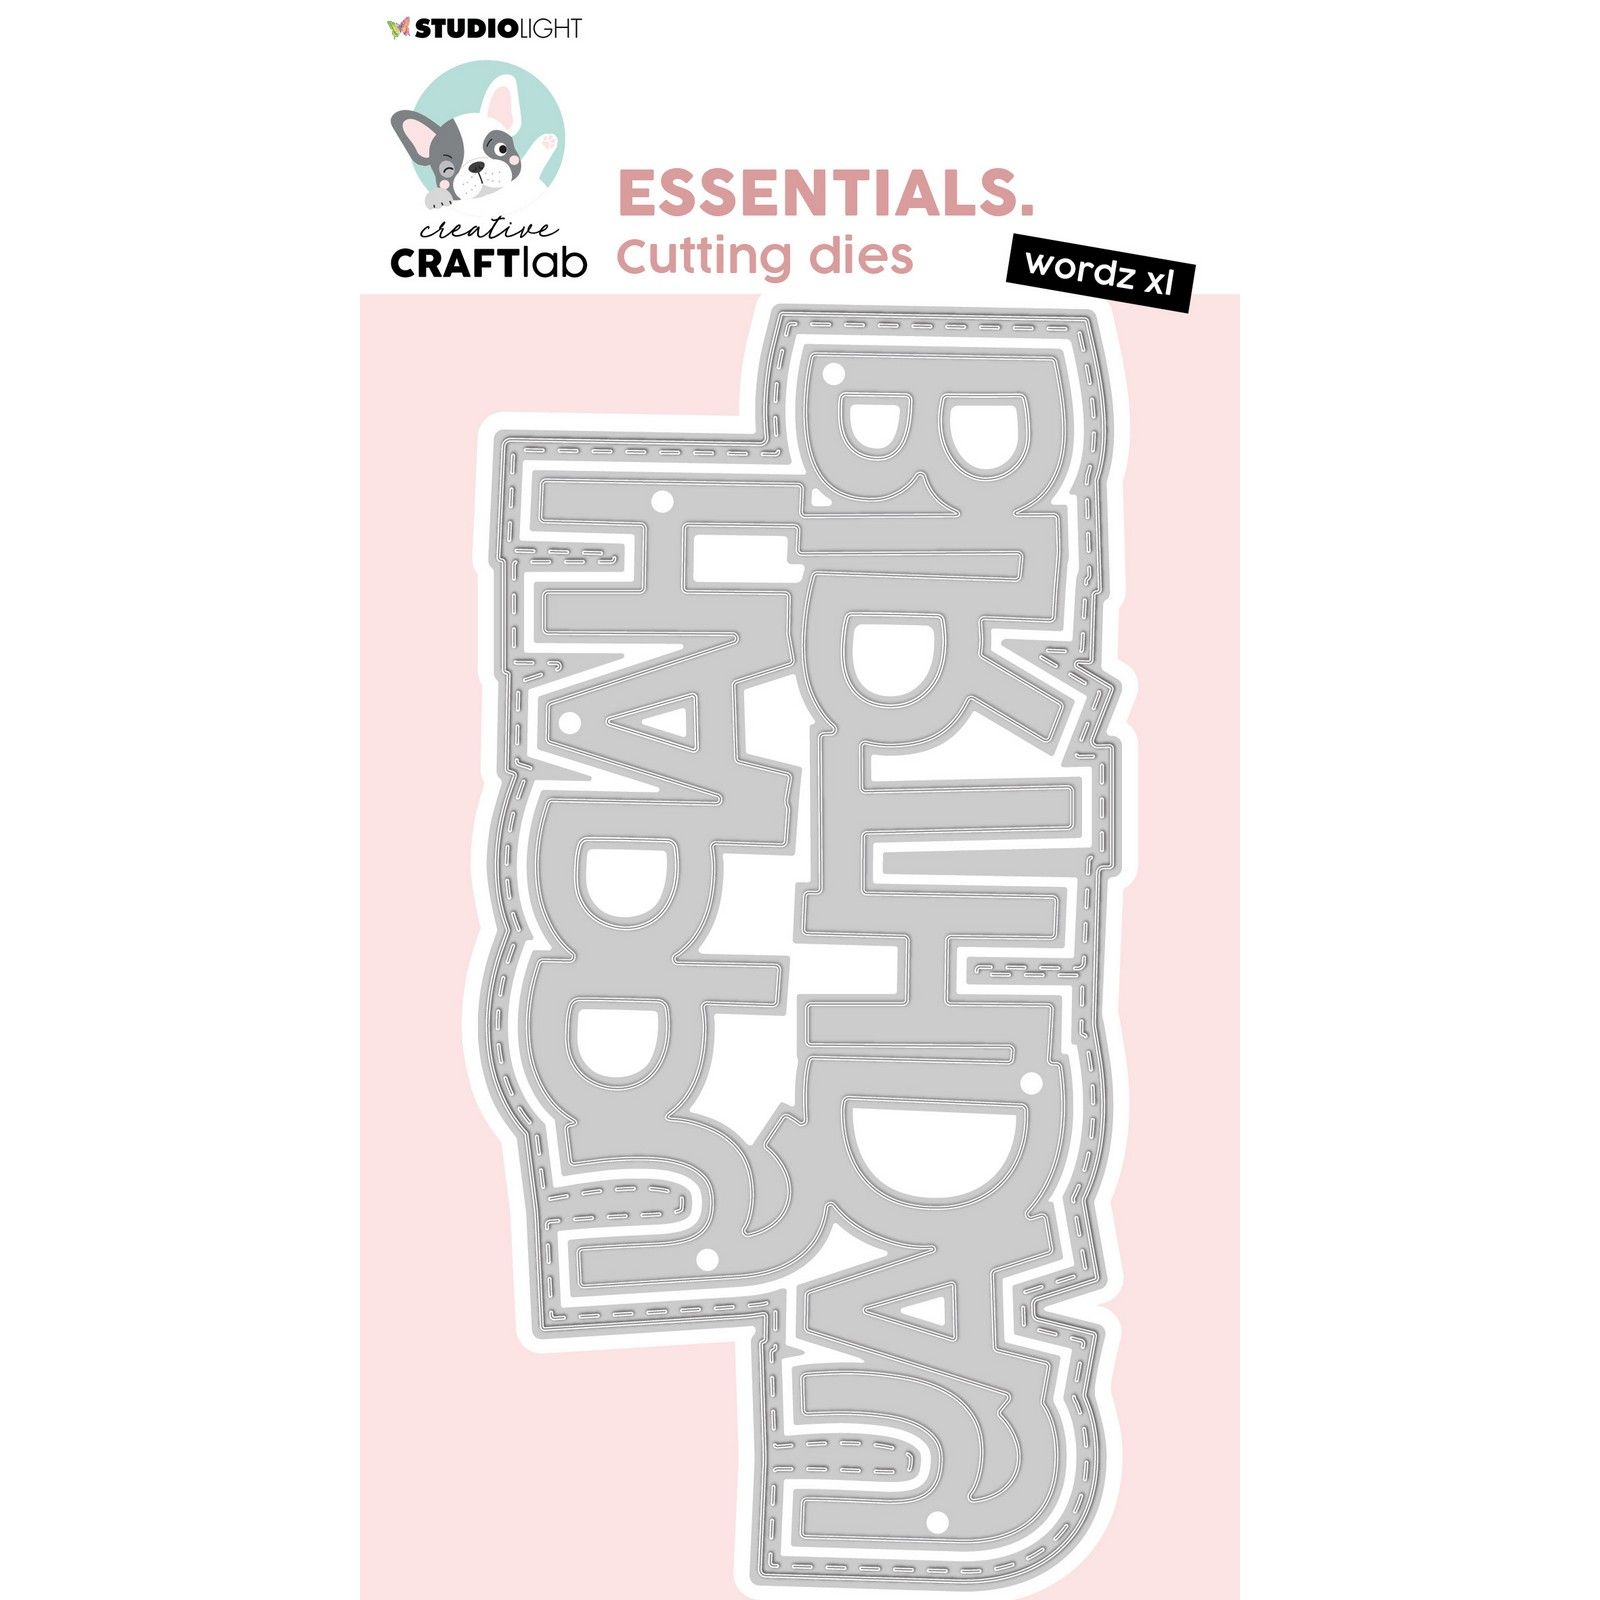 Creative Craftlab • Essentials Fustella da Taglio Wordz XL Happy Birthday